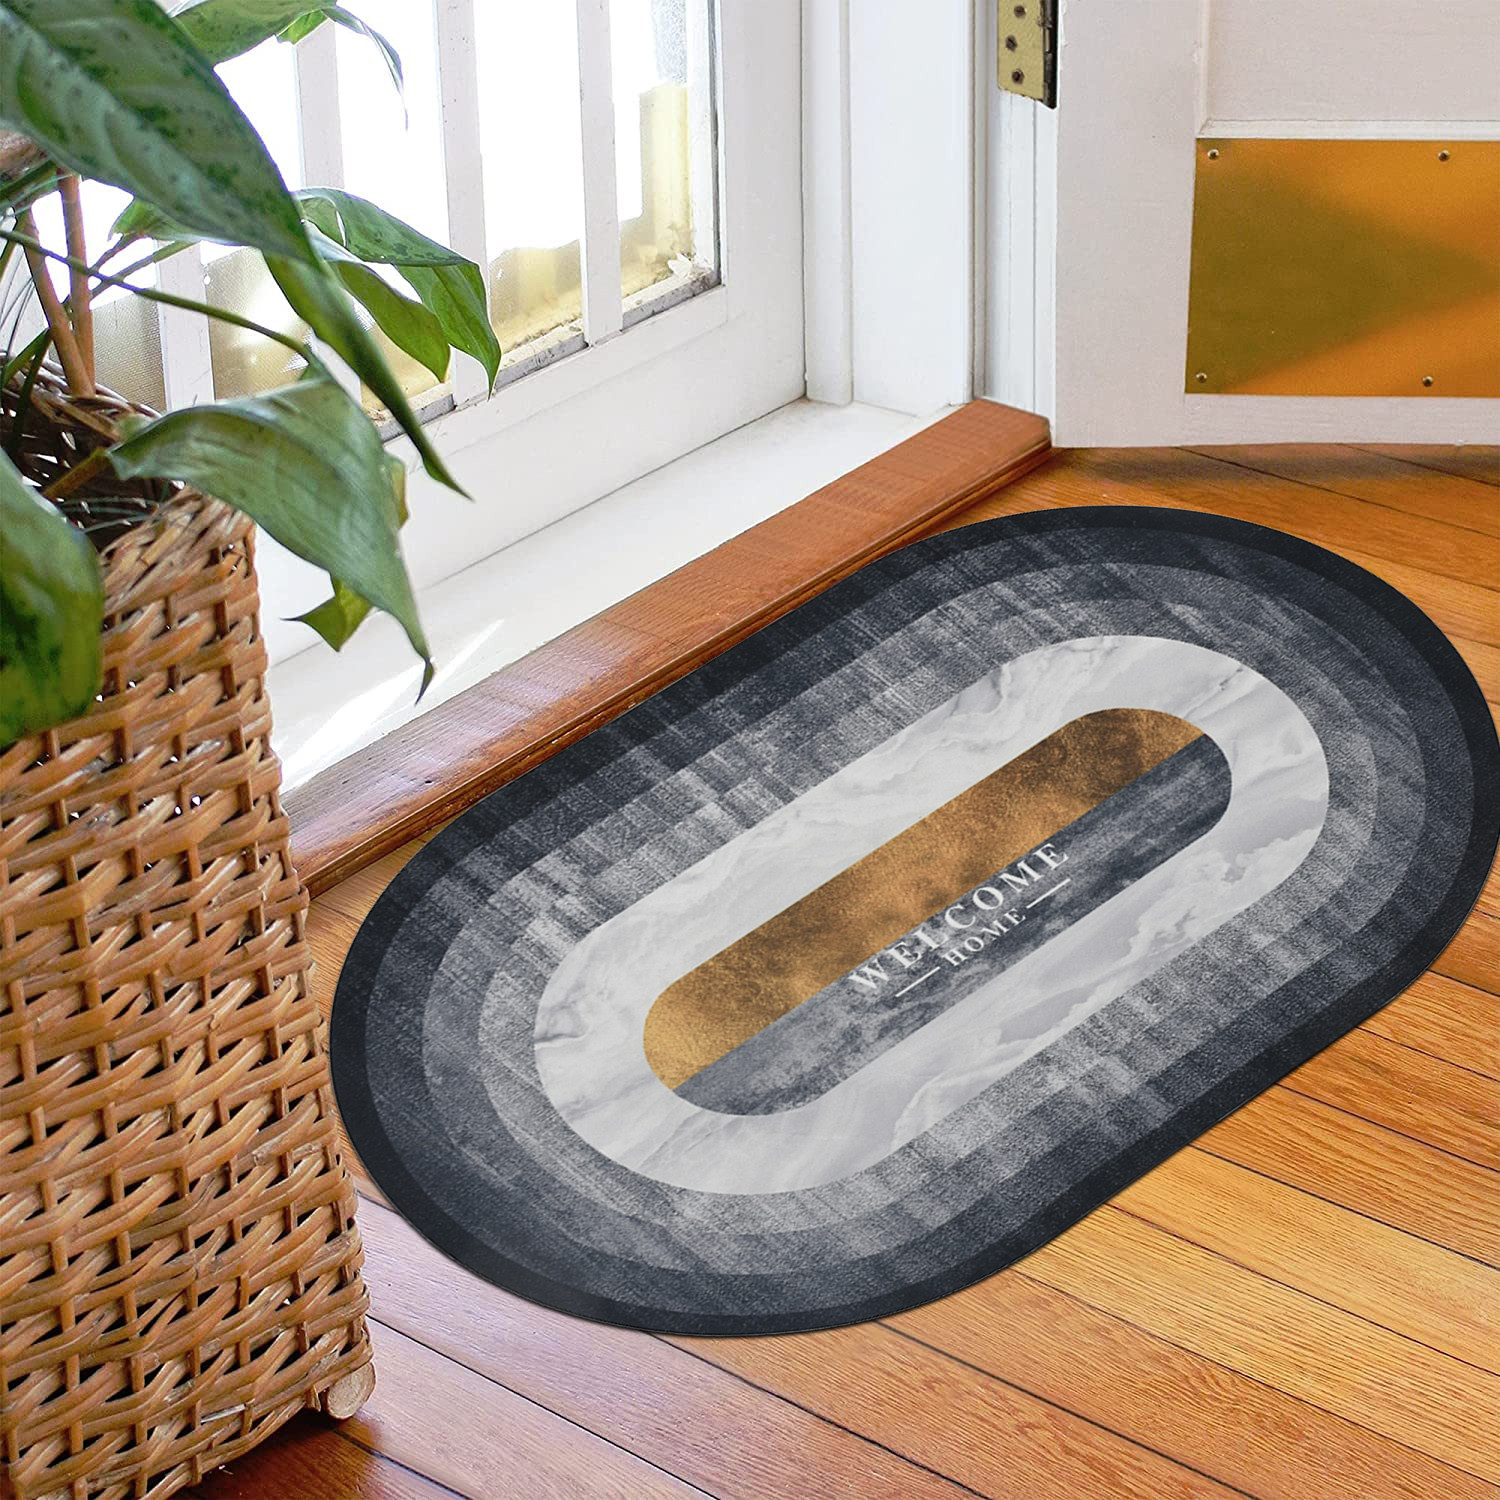 Kuber Industries Doormat|Doormat for Door Entrance|Doormats for Rooms|Doormat for Home|Memory Foam Doormat|Pack of 2 (Grey)